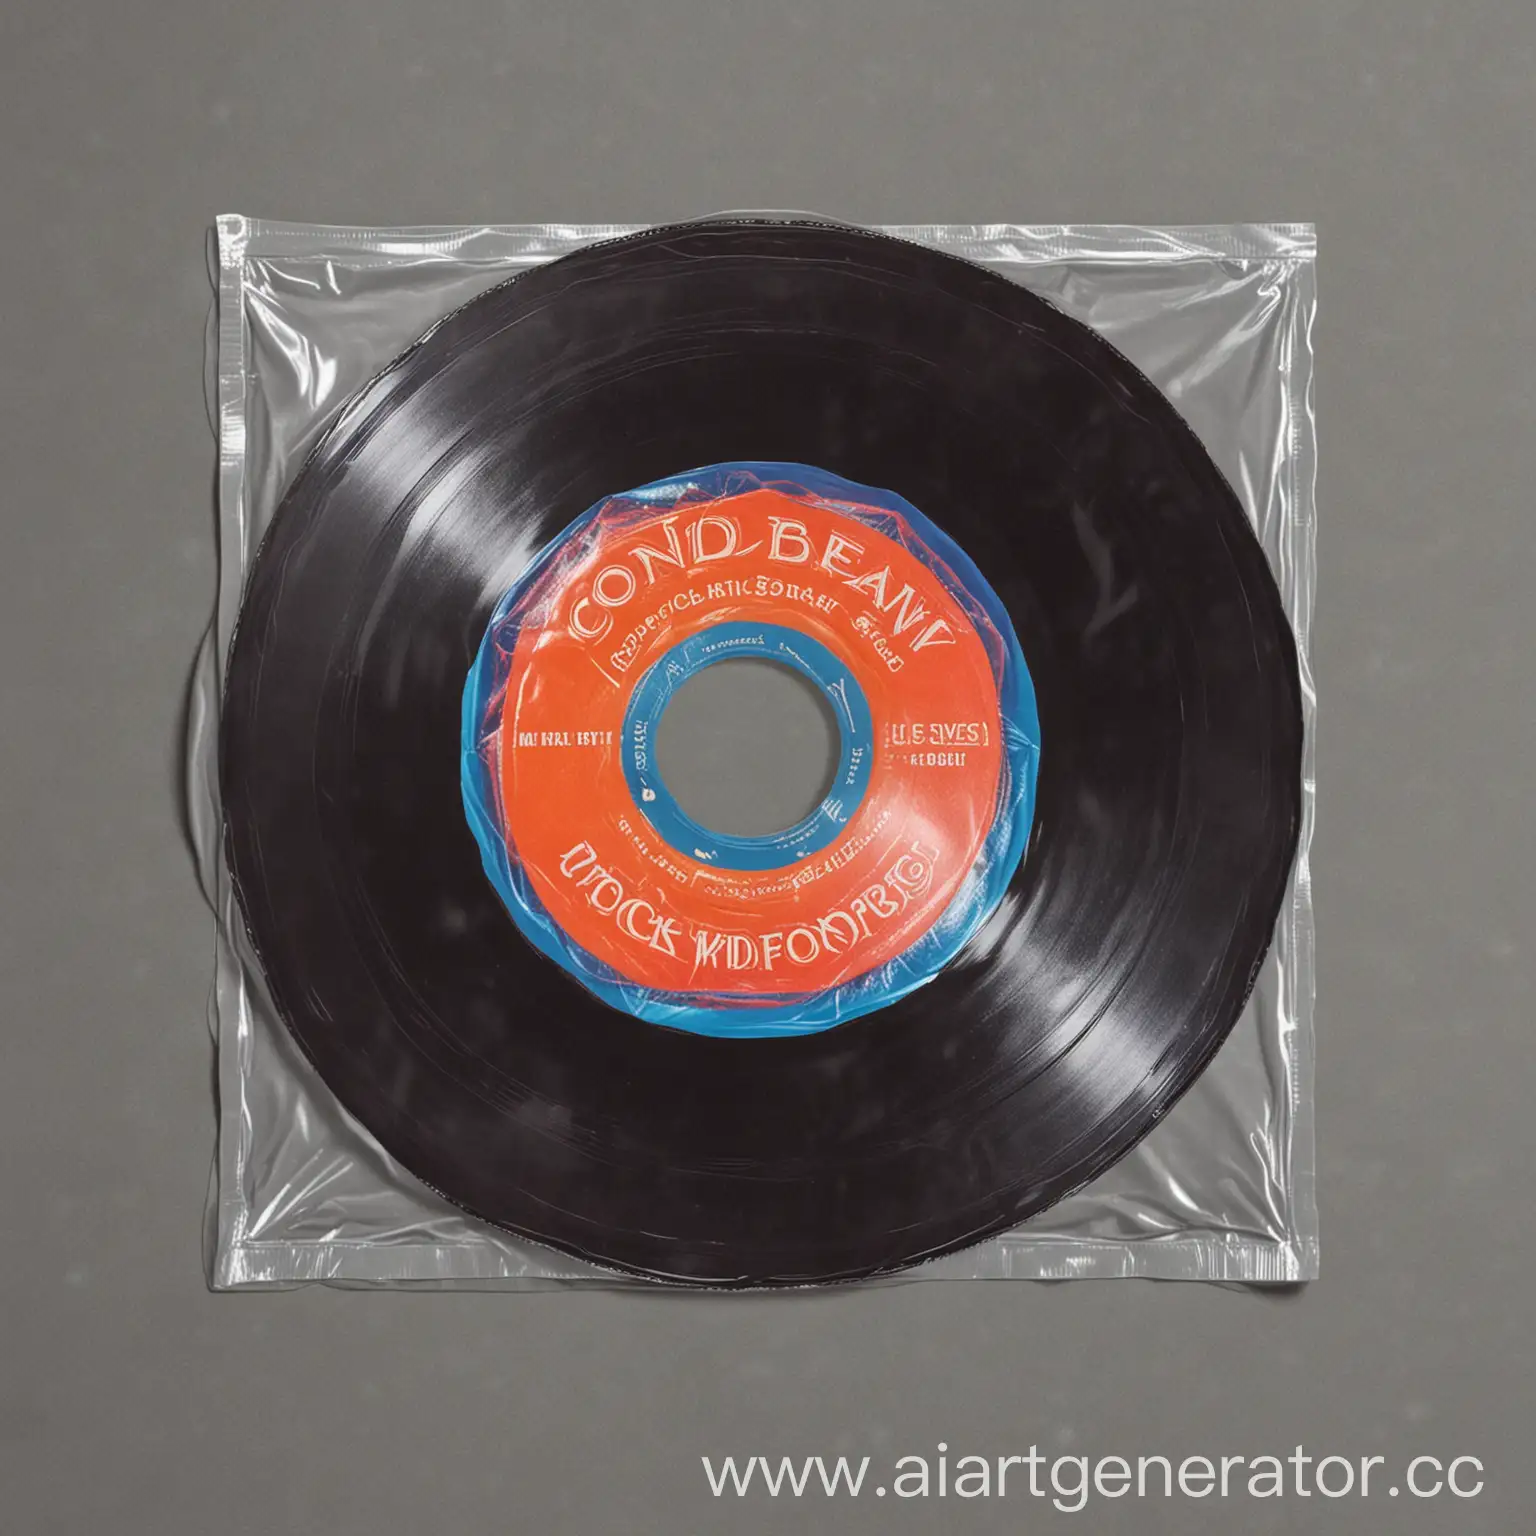 Vinyl-Record-Sleeve-Design-Featuring-Condoms